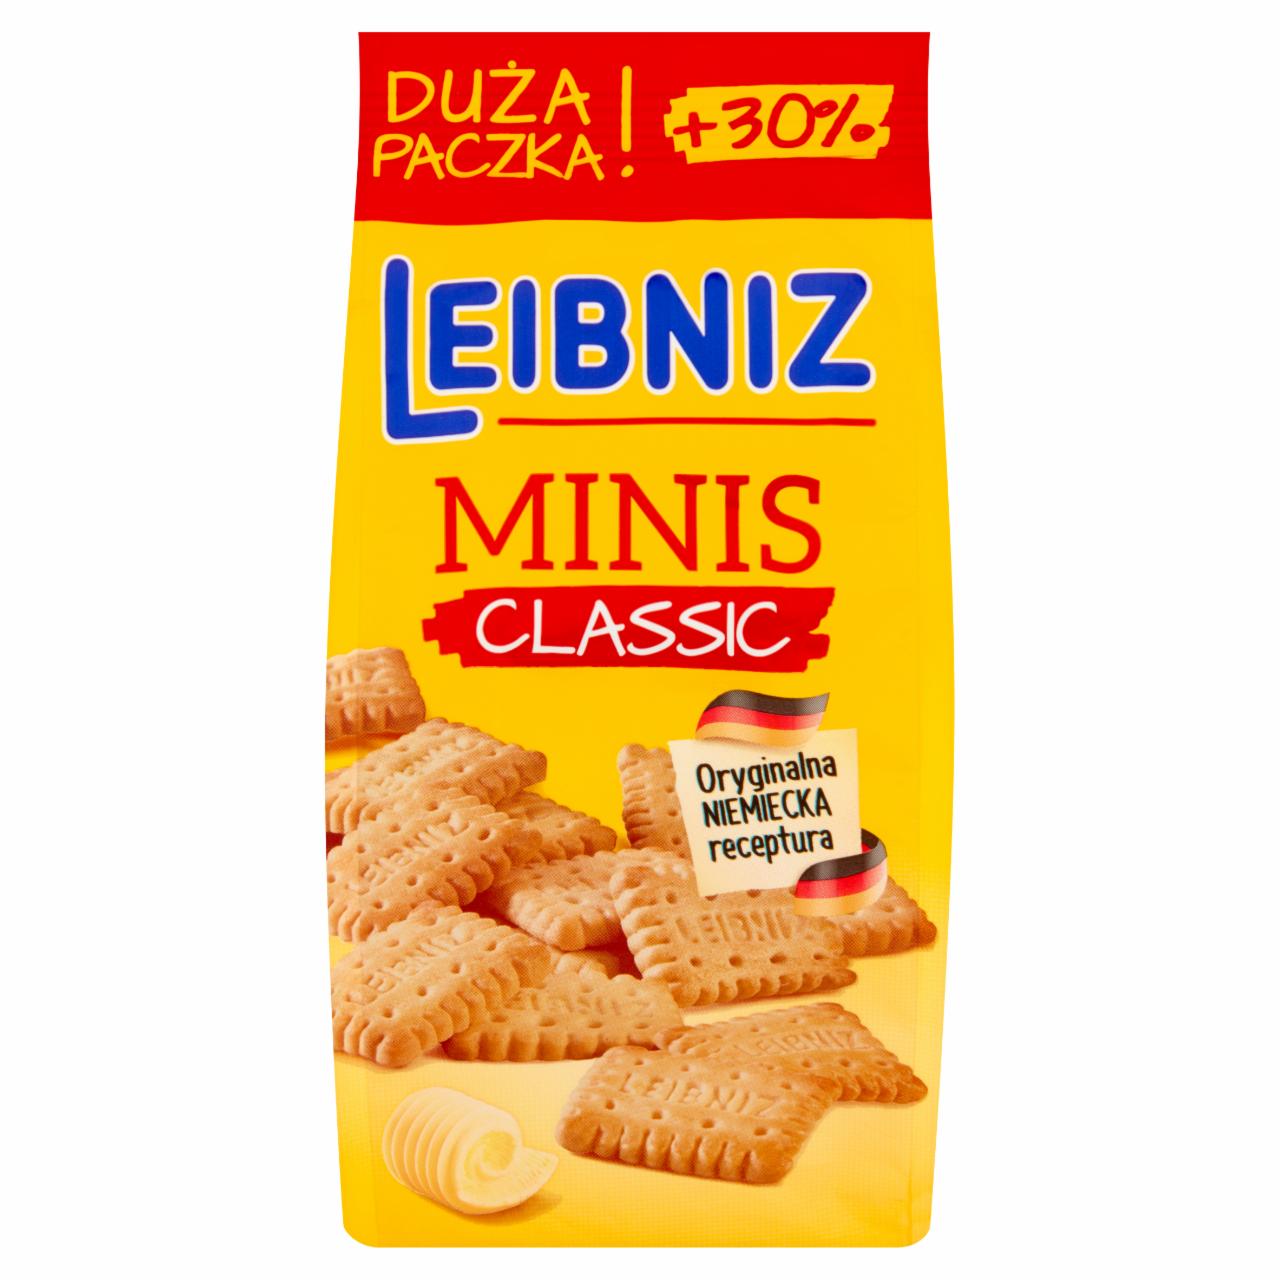 Zdjęcia - Leibniz Minis Classic Herbatniki maślane 130 g